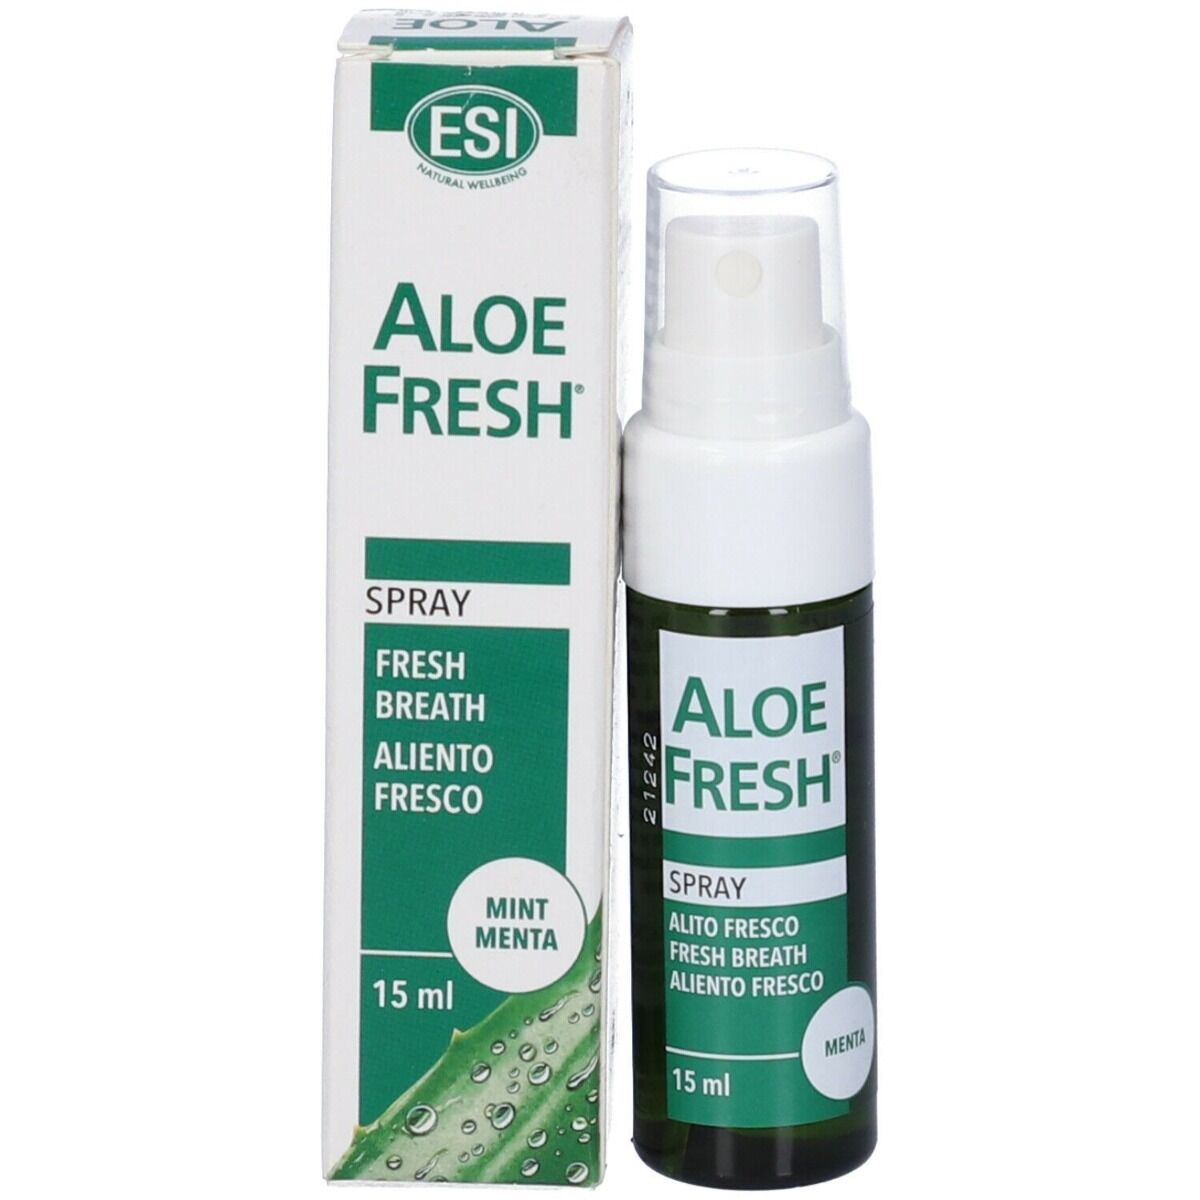 ESI Aloe Fresh Alito Fresco Spray Menta 15 ml